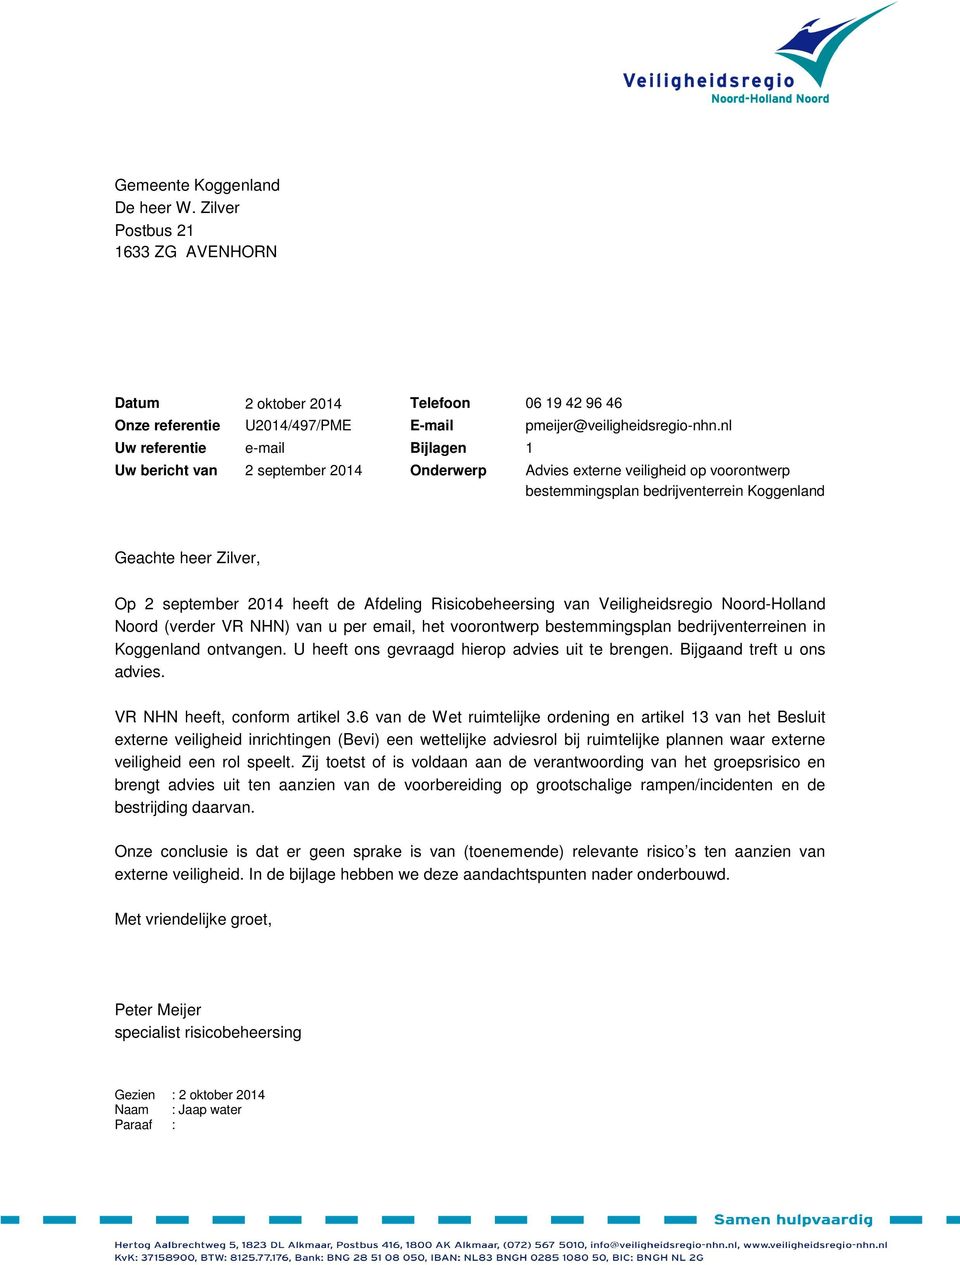 2014 heeft de Afdeling Risicobeheersing van Veiligheidsregio Noord-Holland Noord (verder VR NHN) van u per email, het voorontwerp bestemmingsplan bedrijventerreinen in Koggenland ontvangen.